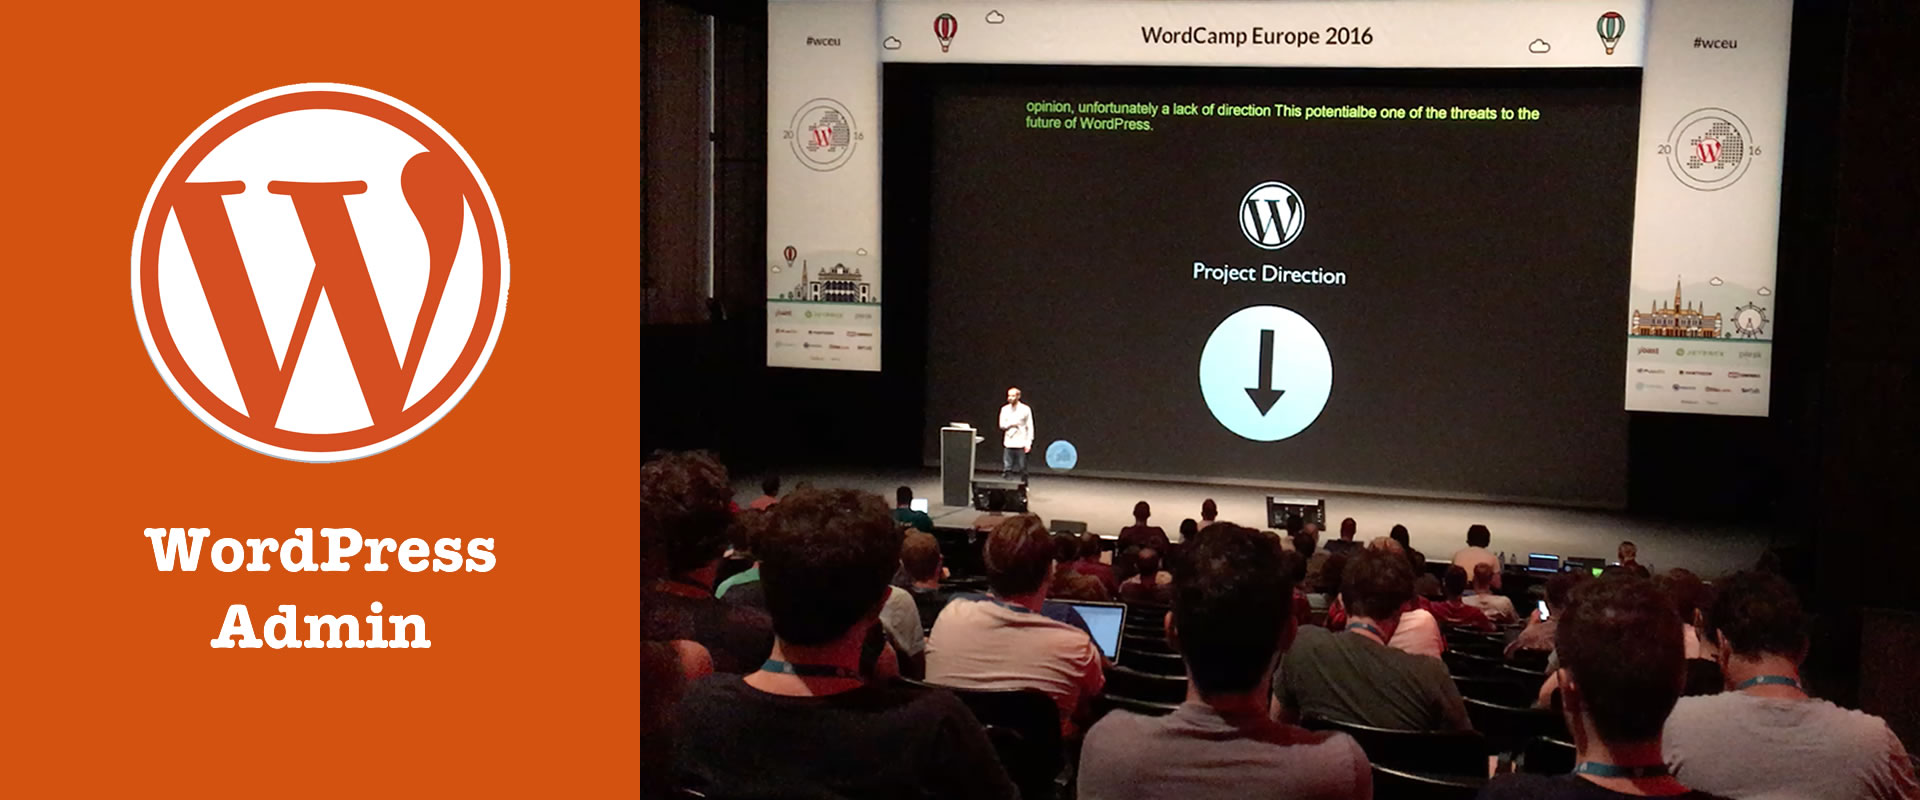 Projektrichtung auf WordCamp Europe 2016 Vienna